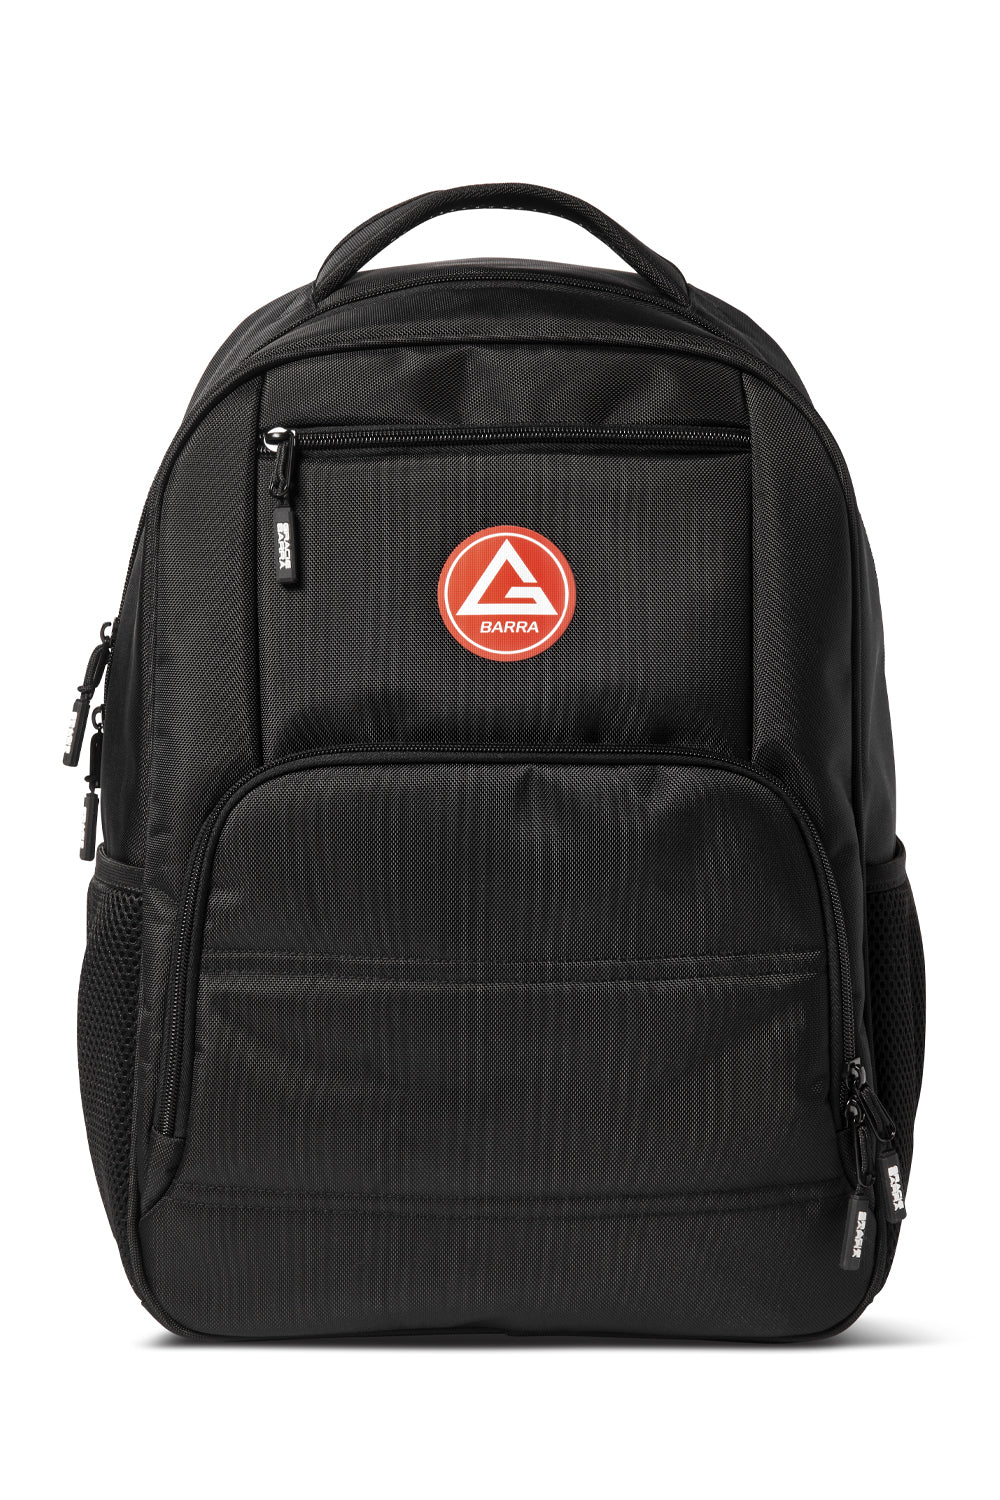 RS Laptop Backpack - Black